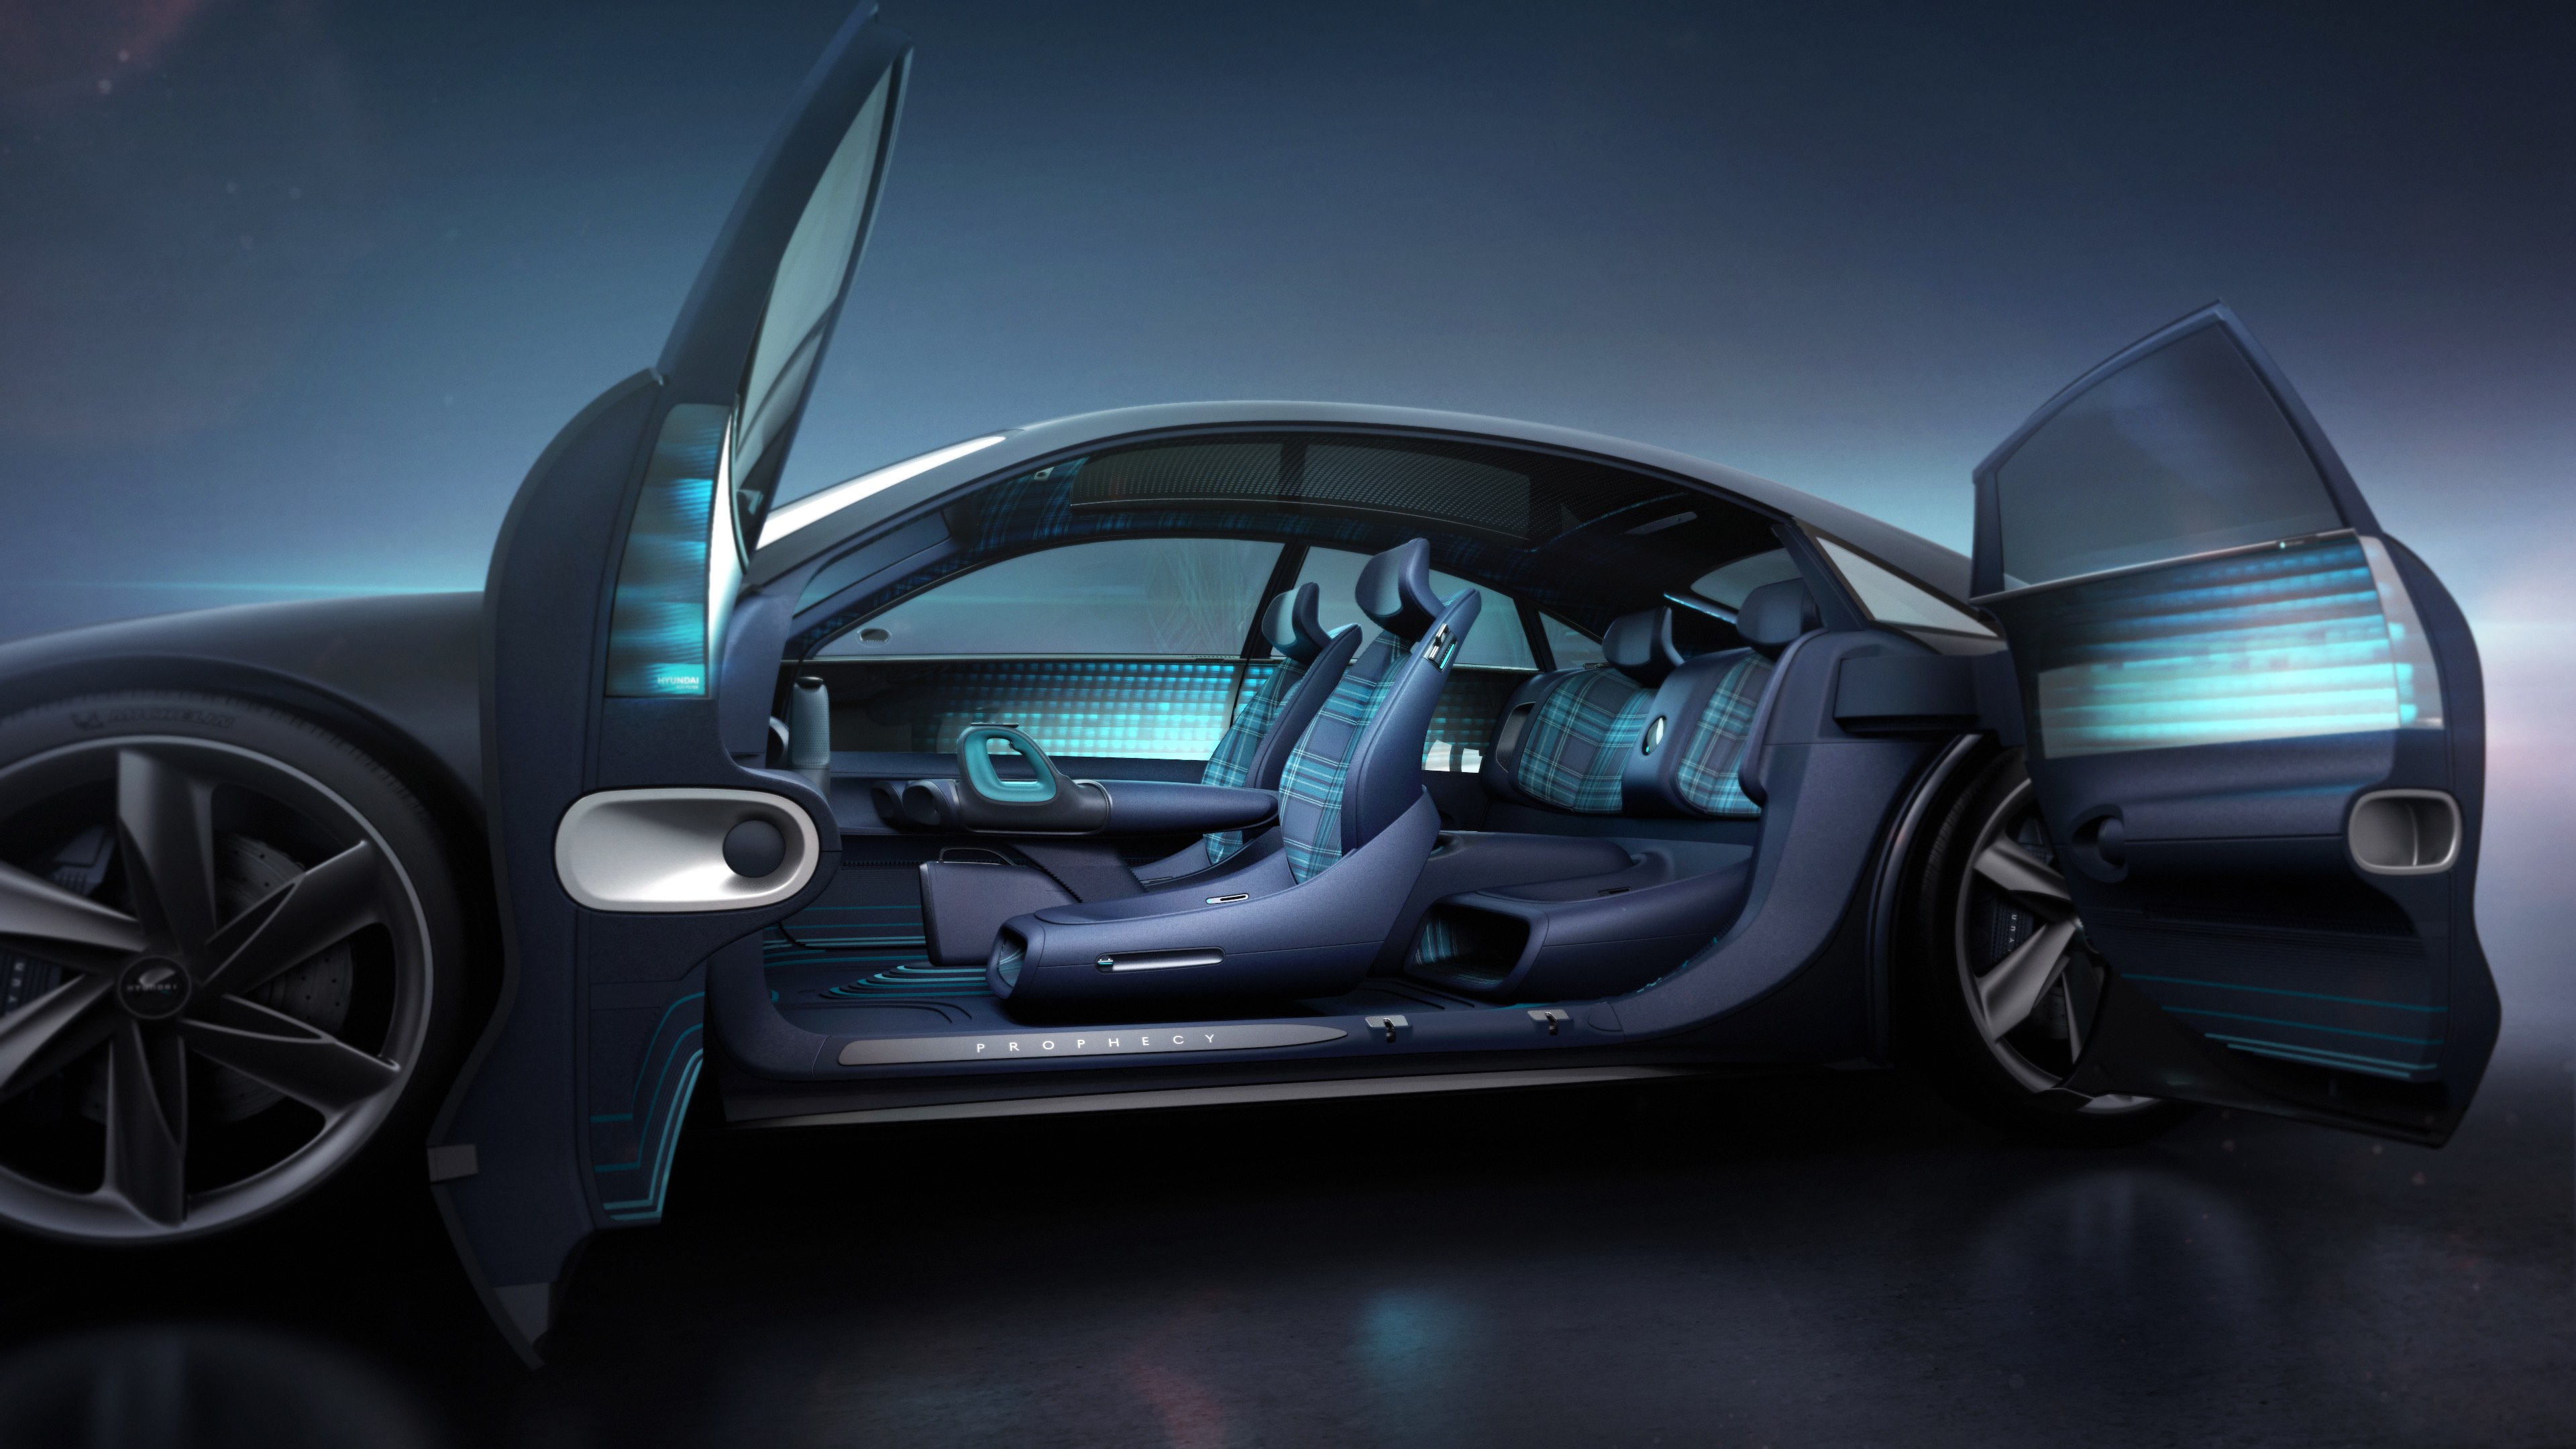 prophecy车舱设计未来已至,可以预见的是,新能源汽车必然是未来全球